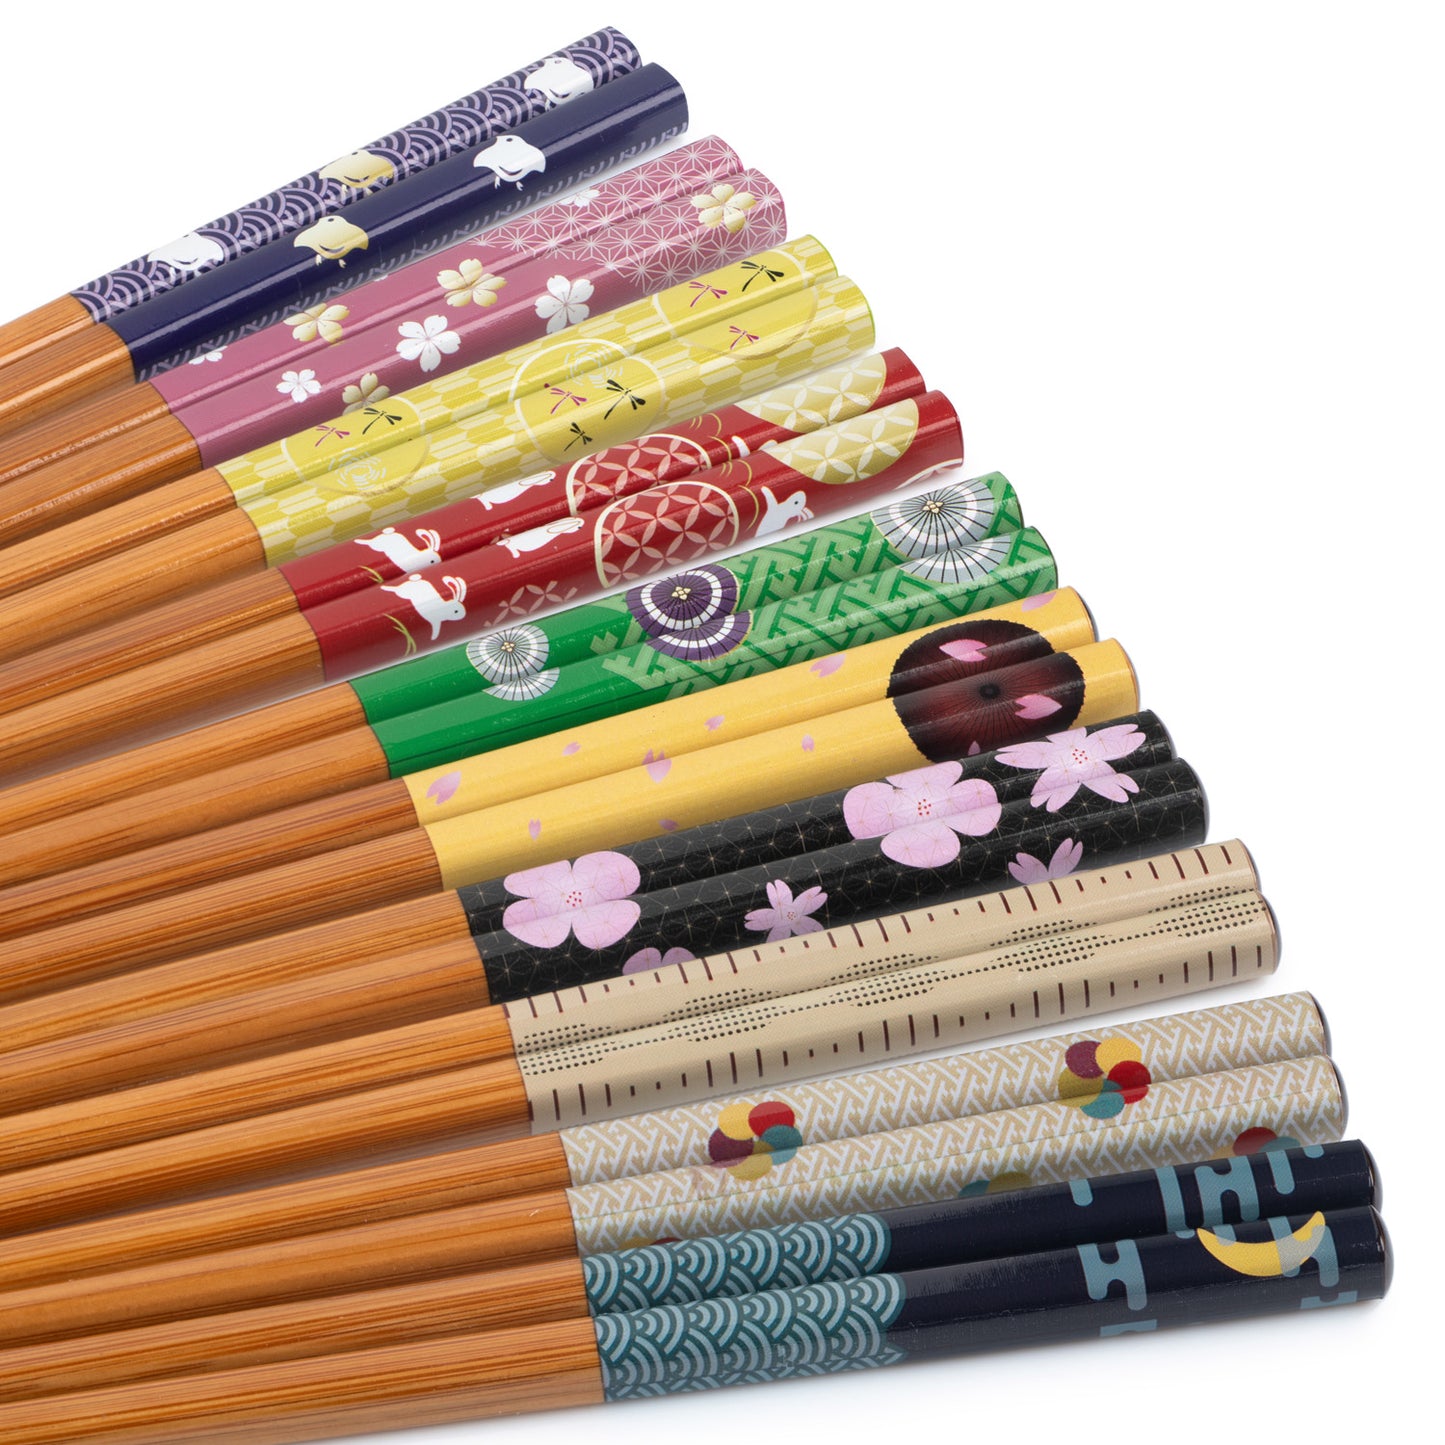 Elegance of Japan Japanese Chopstick Gift Set handles